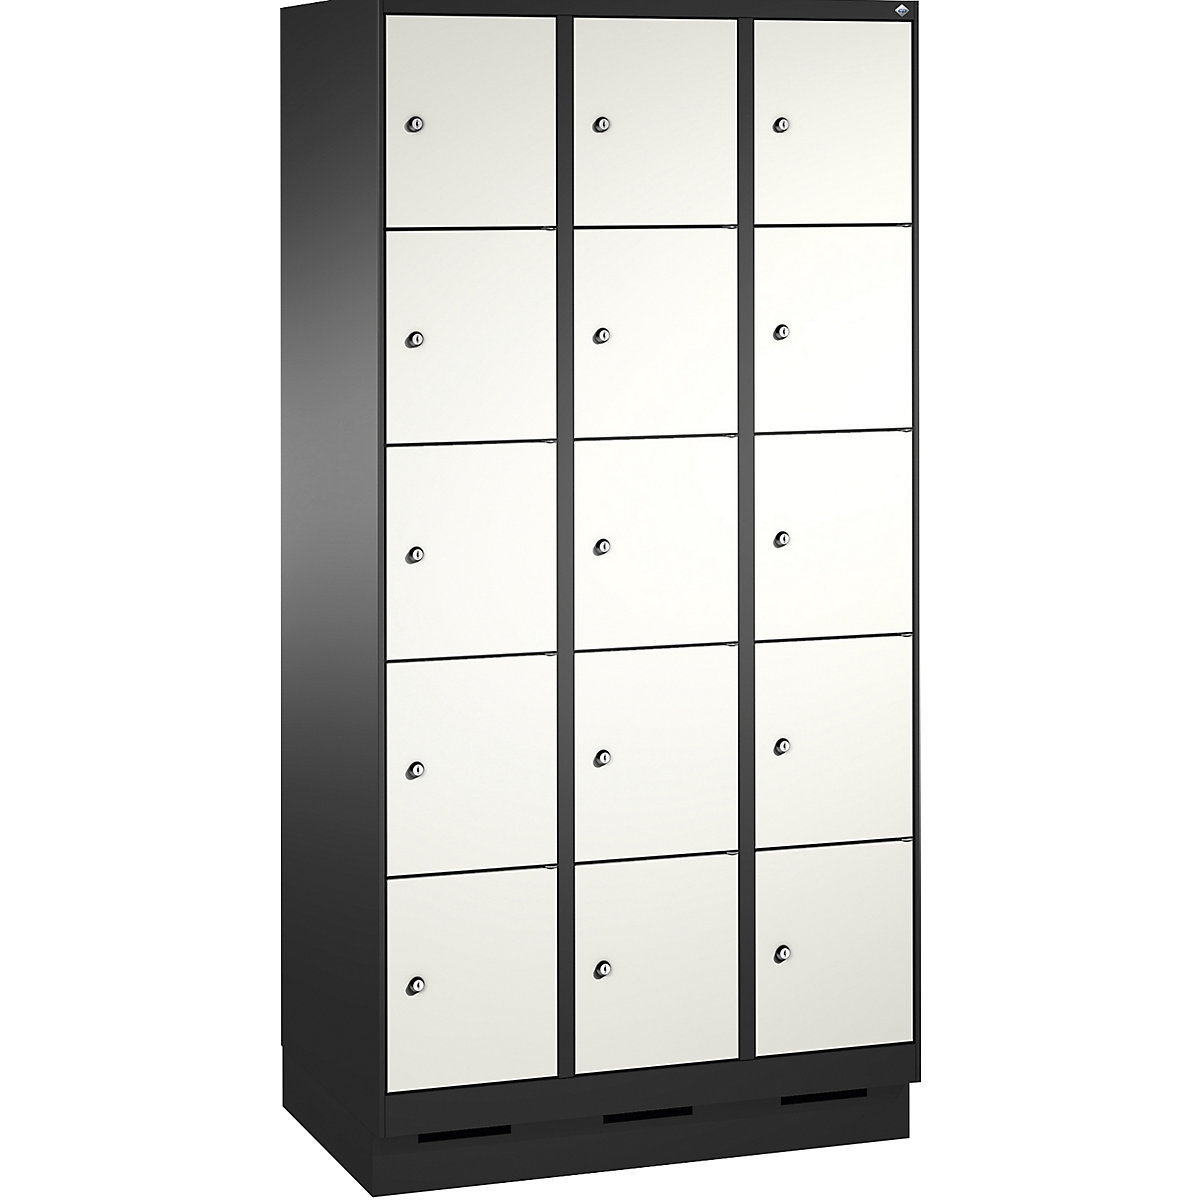 Armoire à casiers sur socle EVOLO – C+P, 3 compartiments, 5 casiers chacun, largeur compartiments 300 mm, gris noir / blanc trafic-2